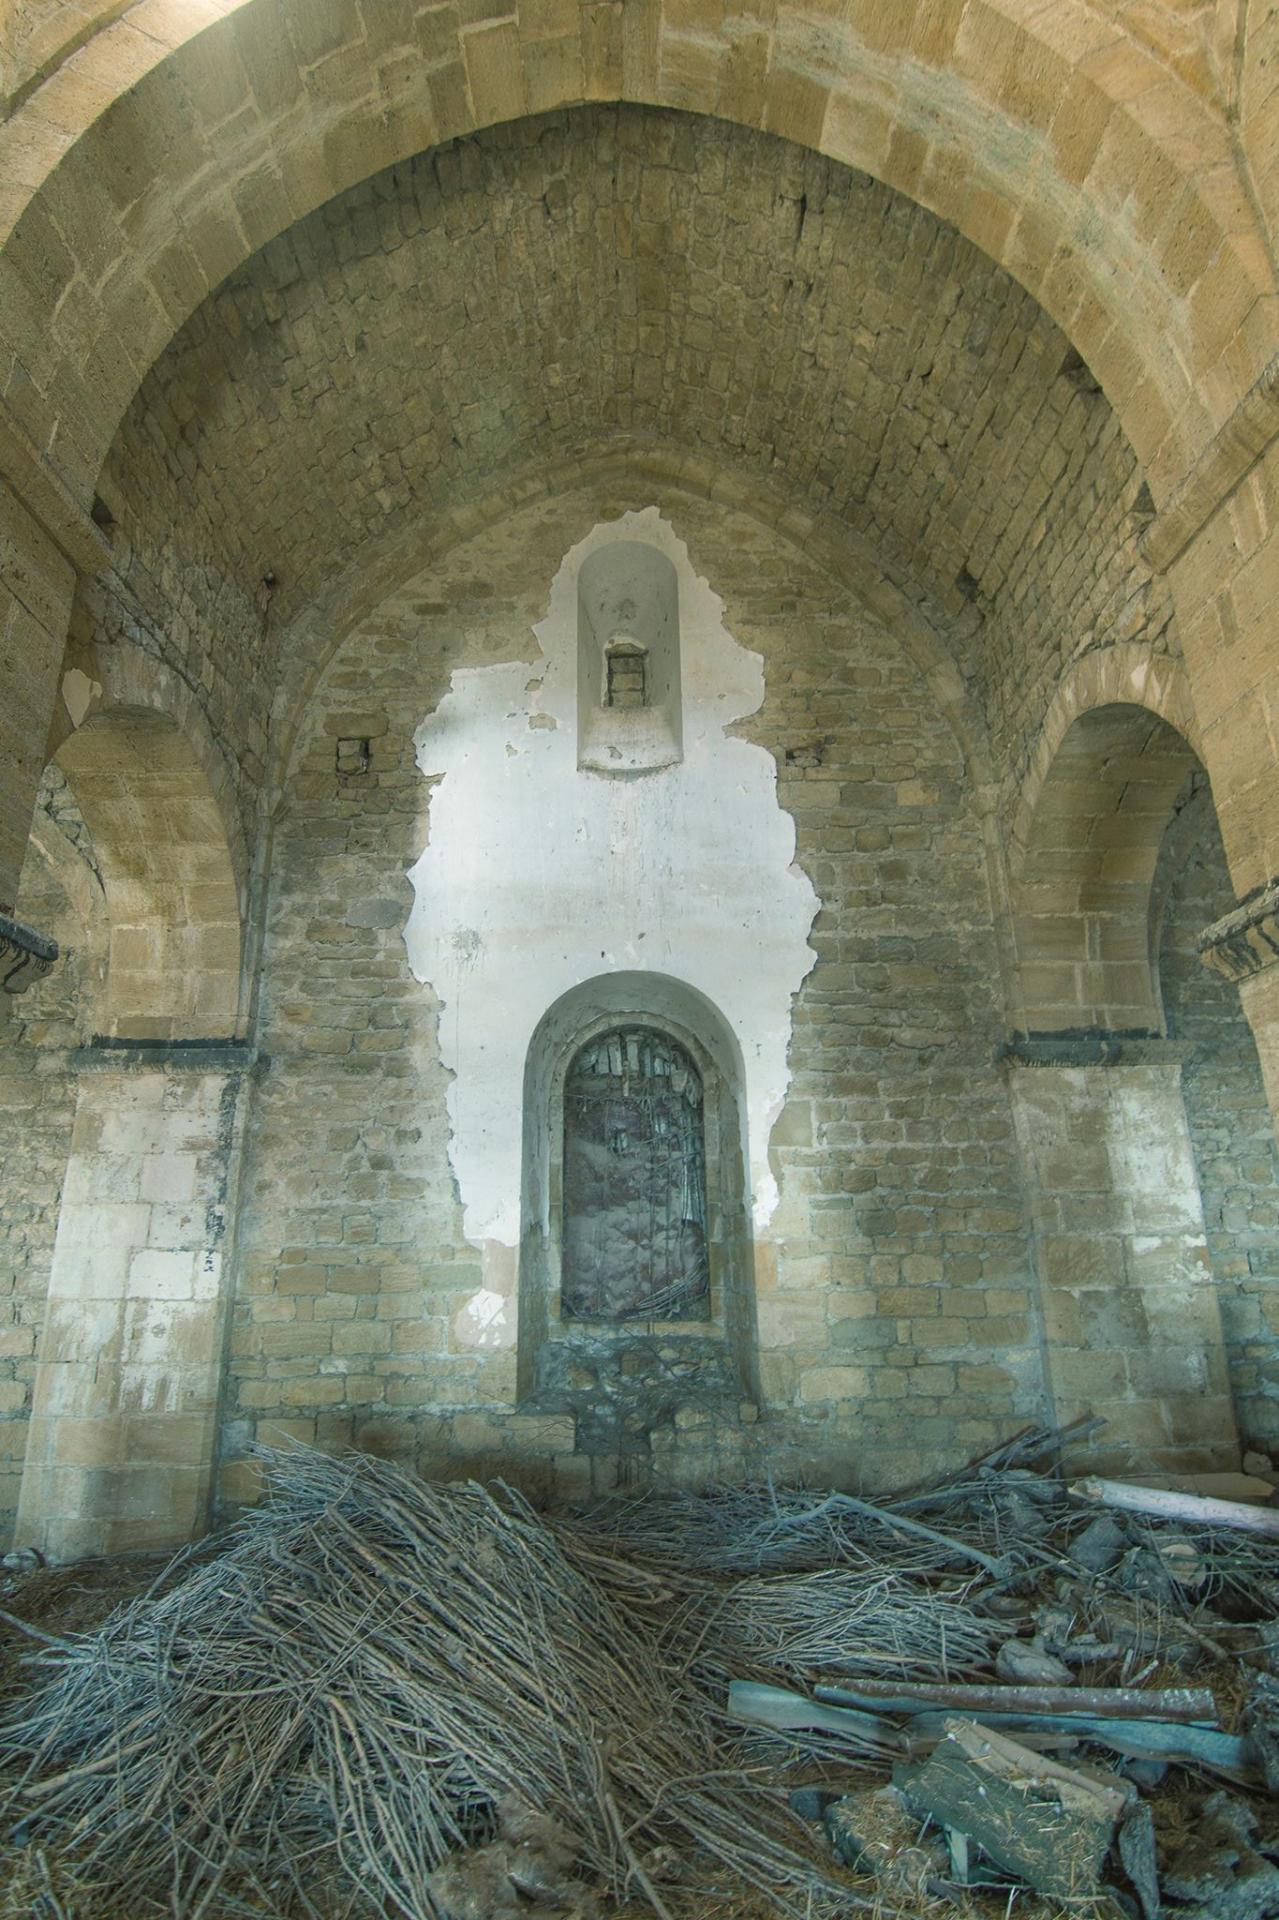 Церковь в Шамахы будет внесена в список охраняемых памятников Азербайджана (ФОТО)